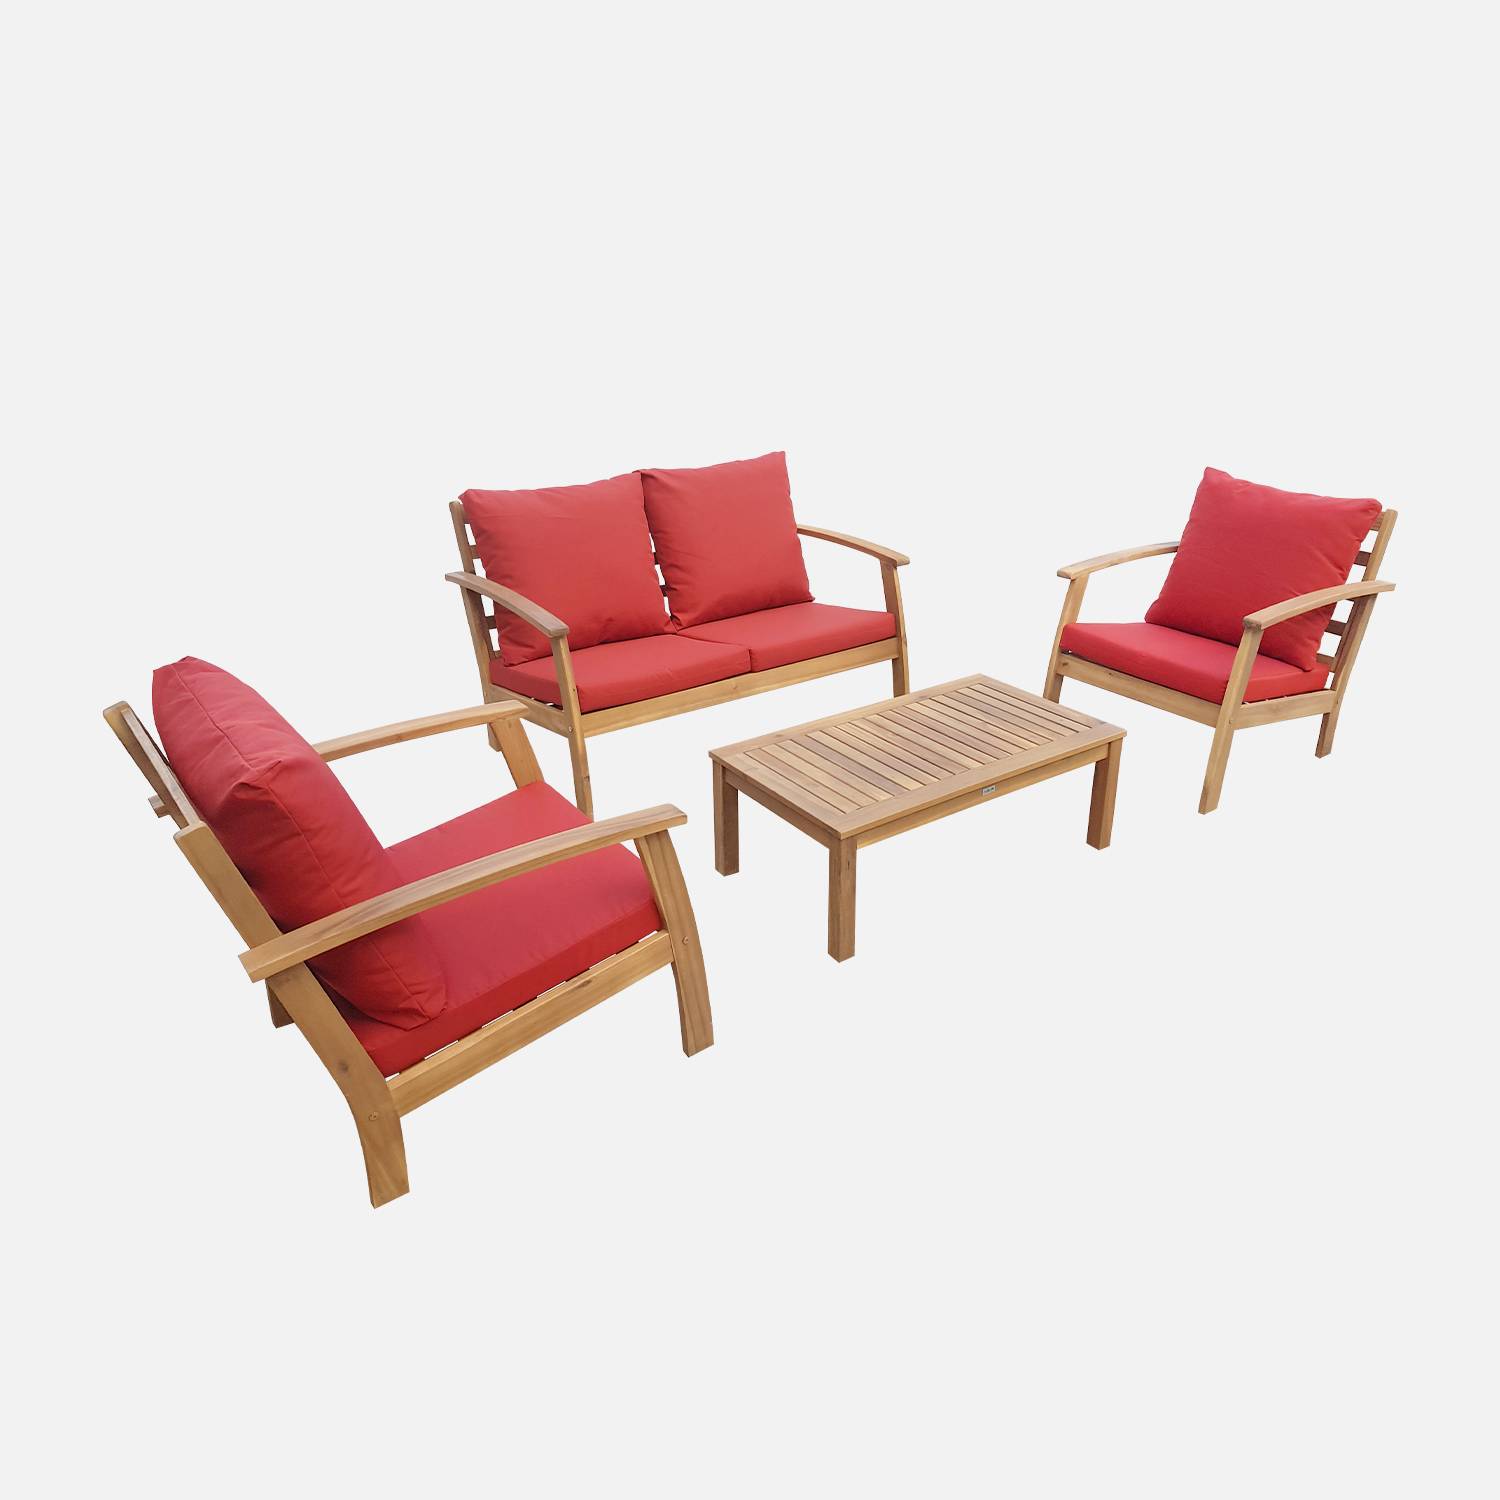 Salon de jardin en bois 4 places - Ushuaïa - Coussins terracotta, canapé, fauteuils et table basse en acacia, design Photo3